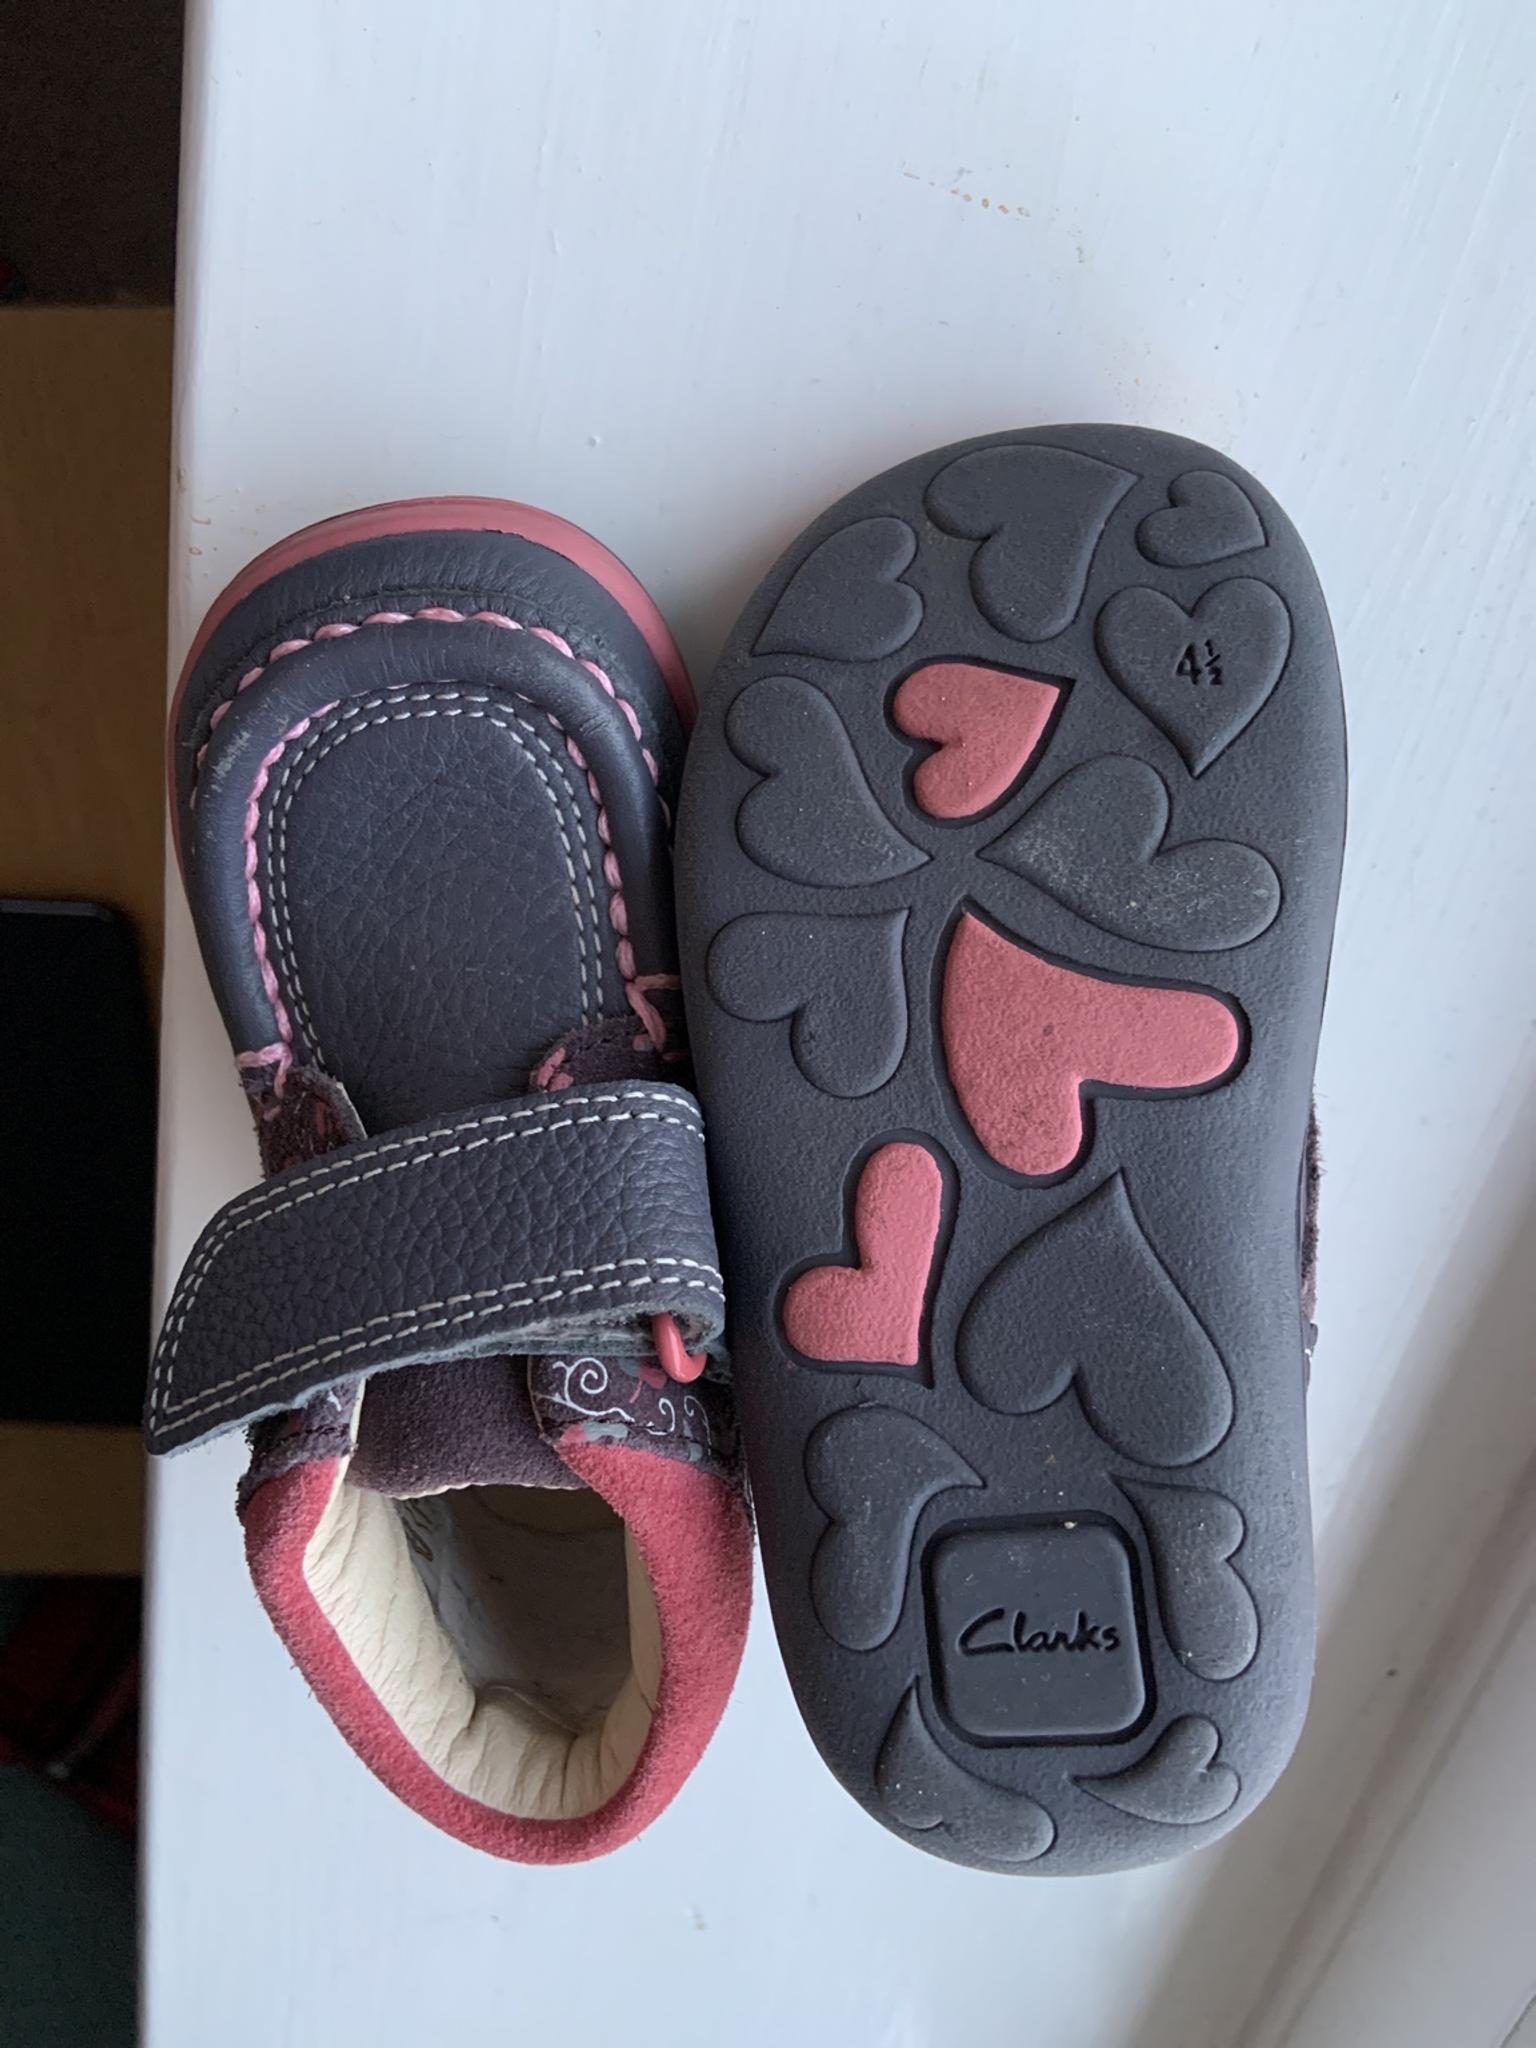 clarks sandals size 4.5